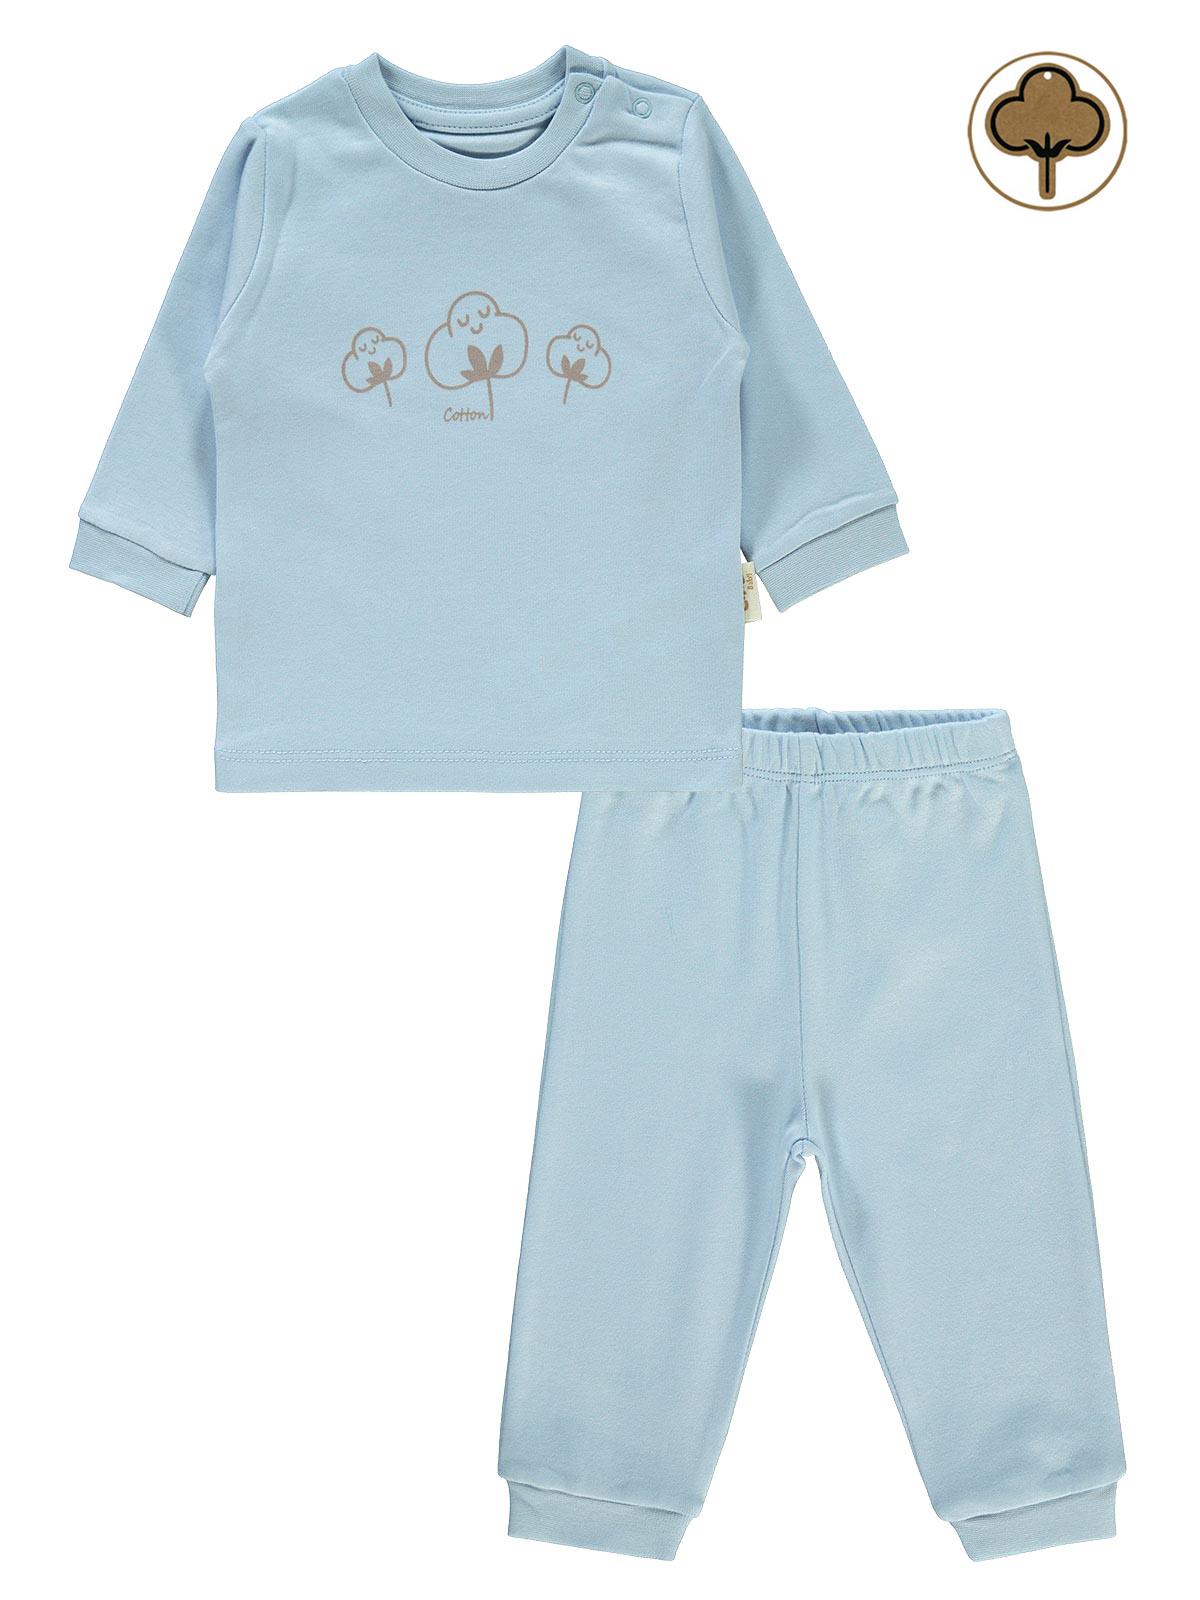 Civil Baby Bebek Organik Pijama Takımı 1-9 Ay Mavi